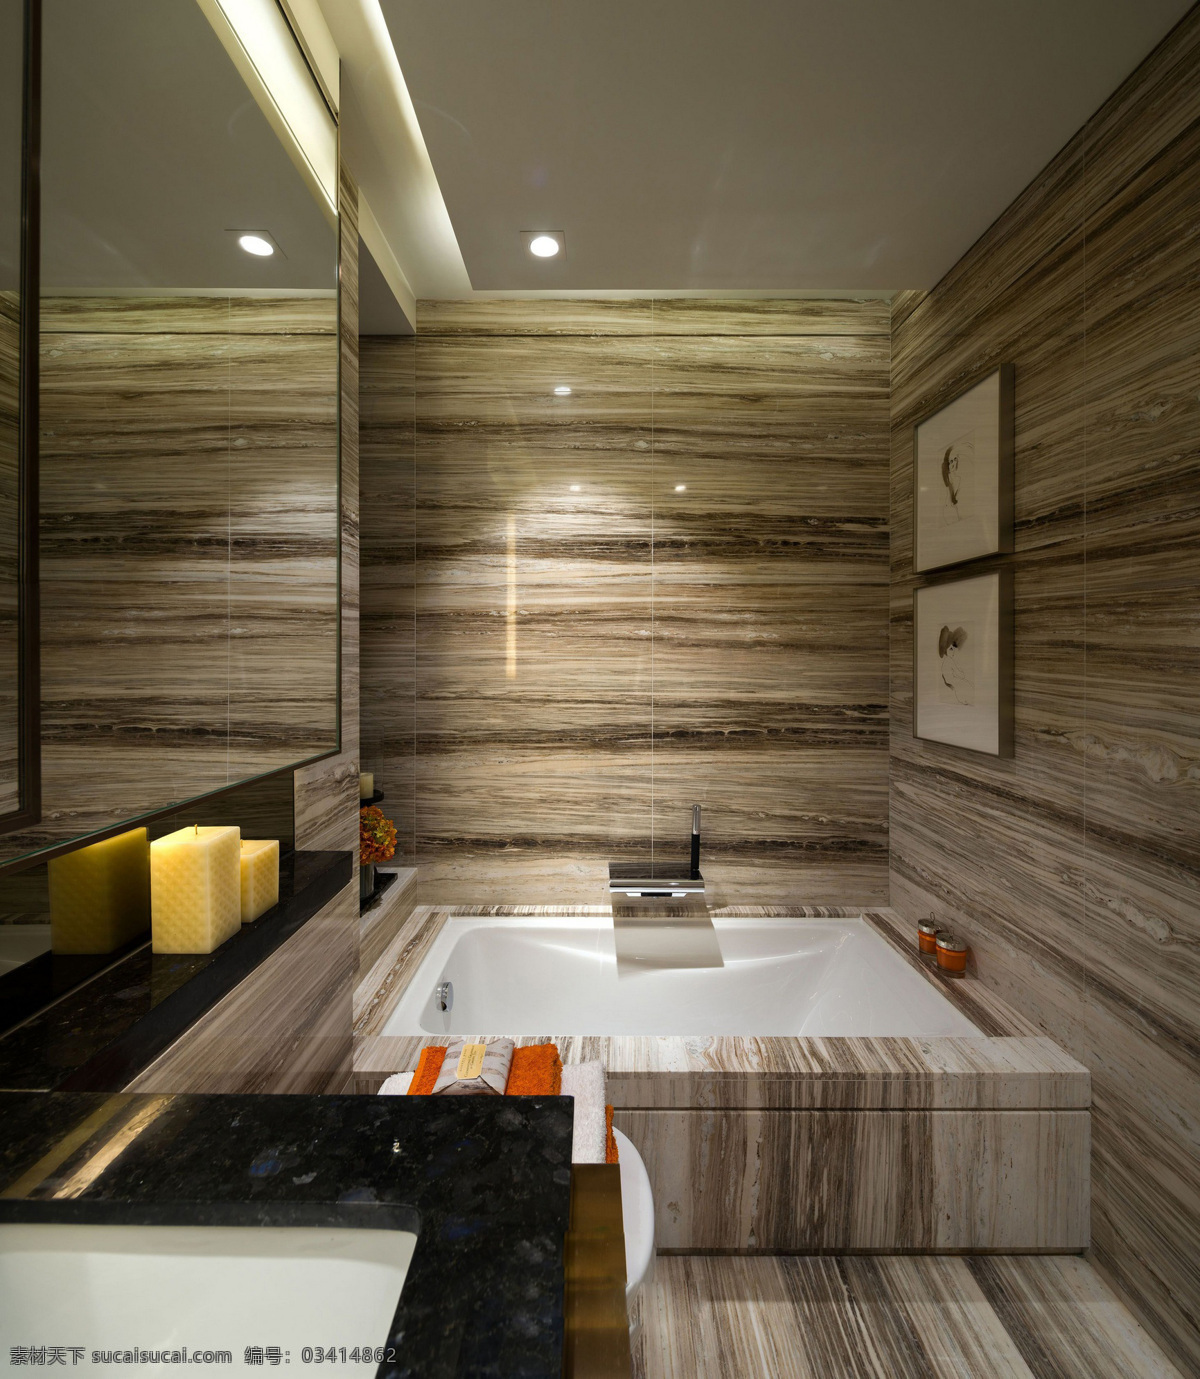 现代 北欧 轻 奢 风格 浴室 浴缸 装修 效果图 轻奢风格 高清大图